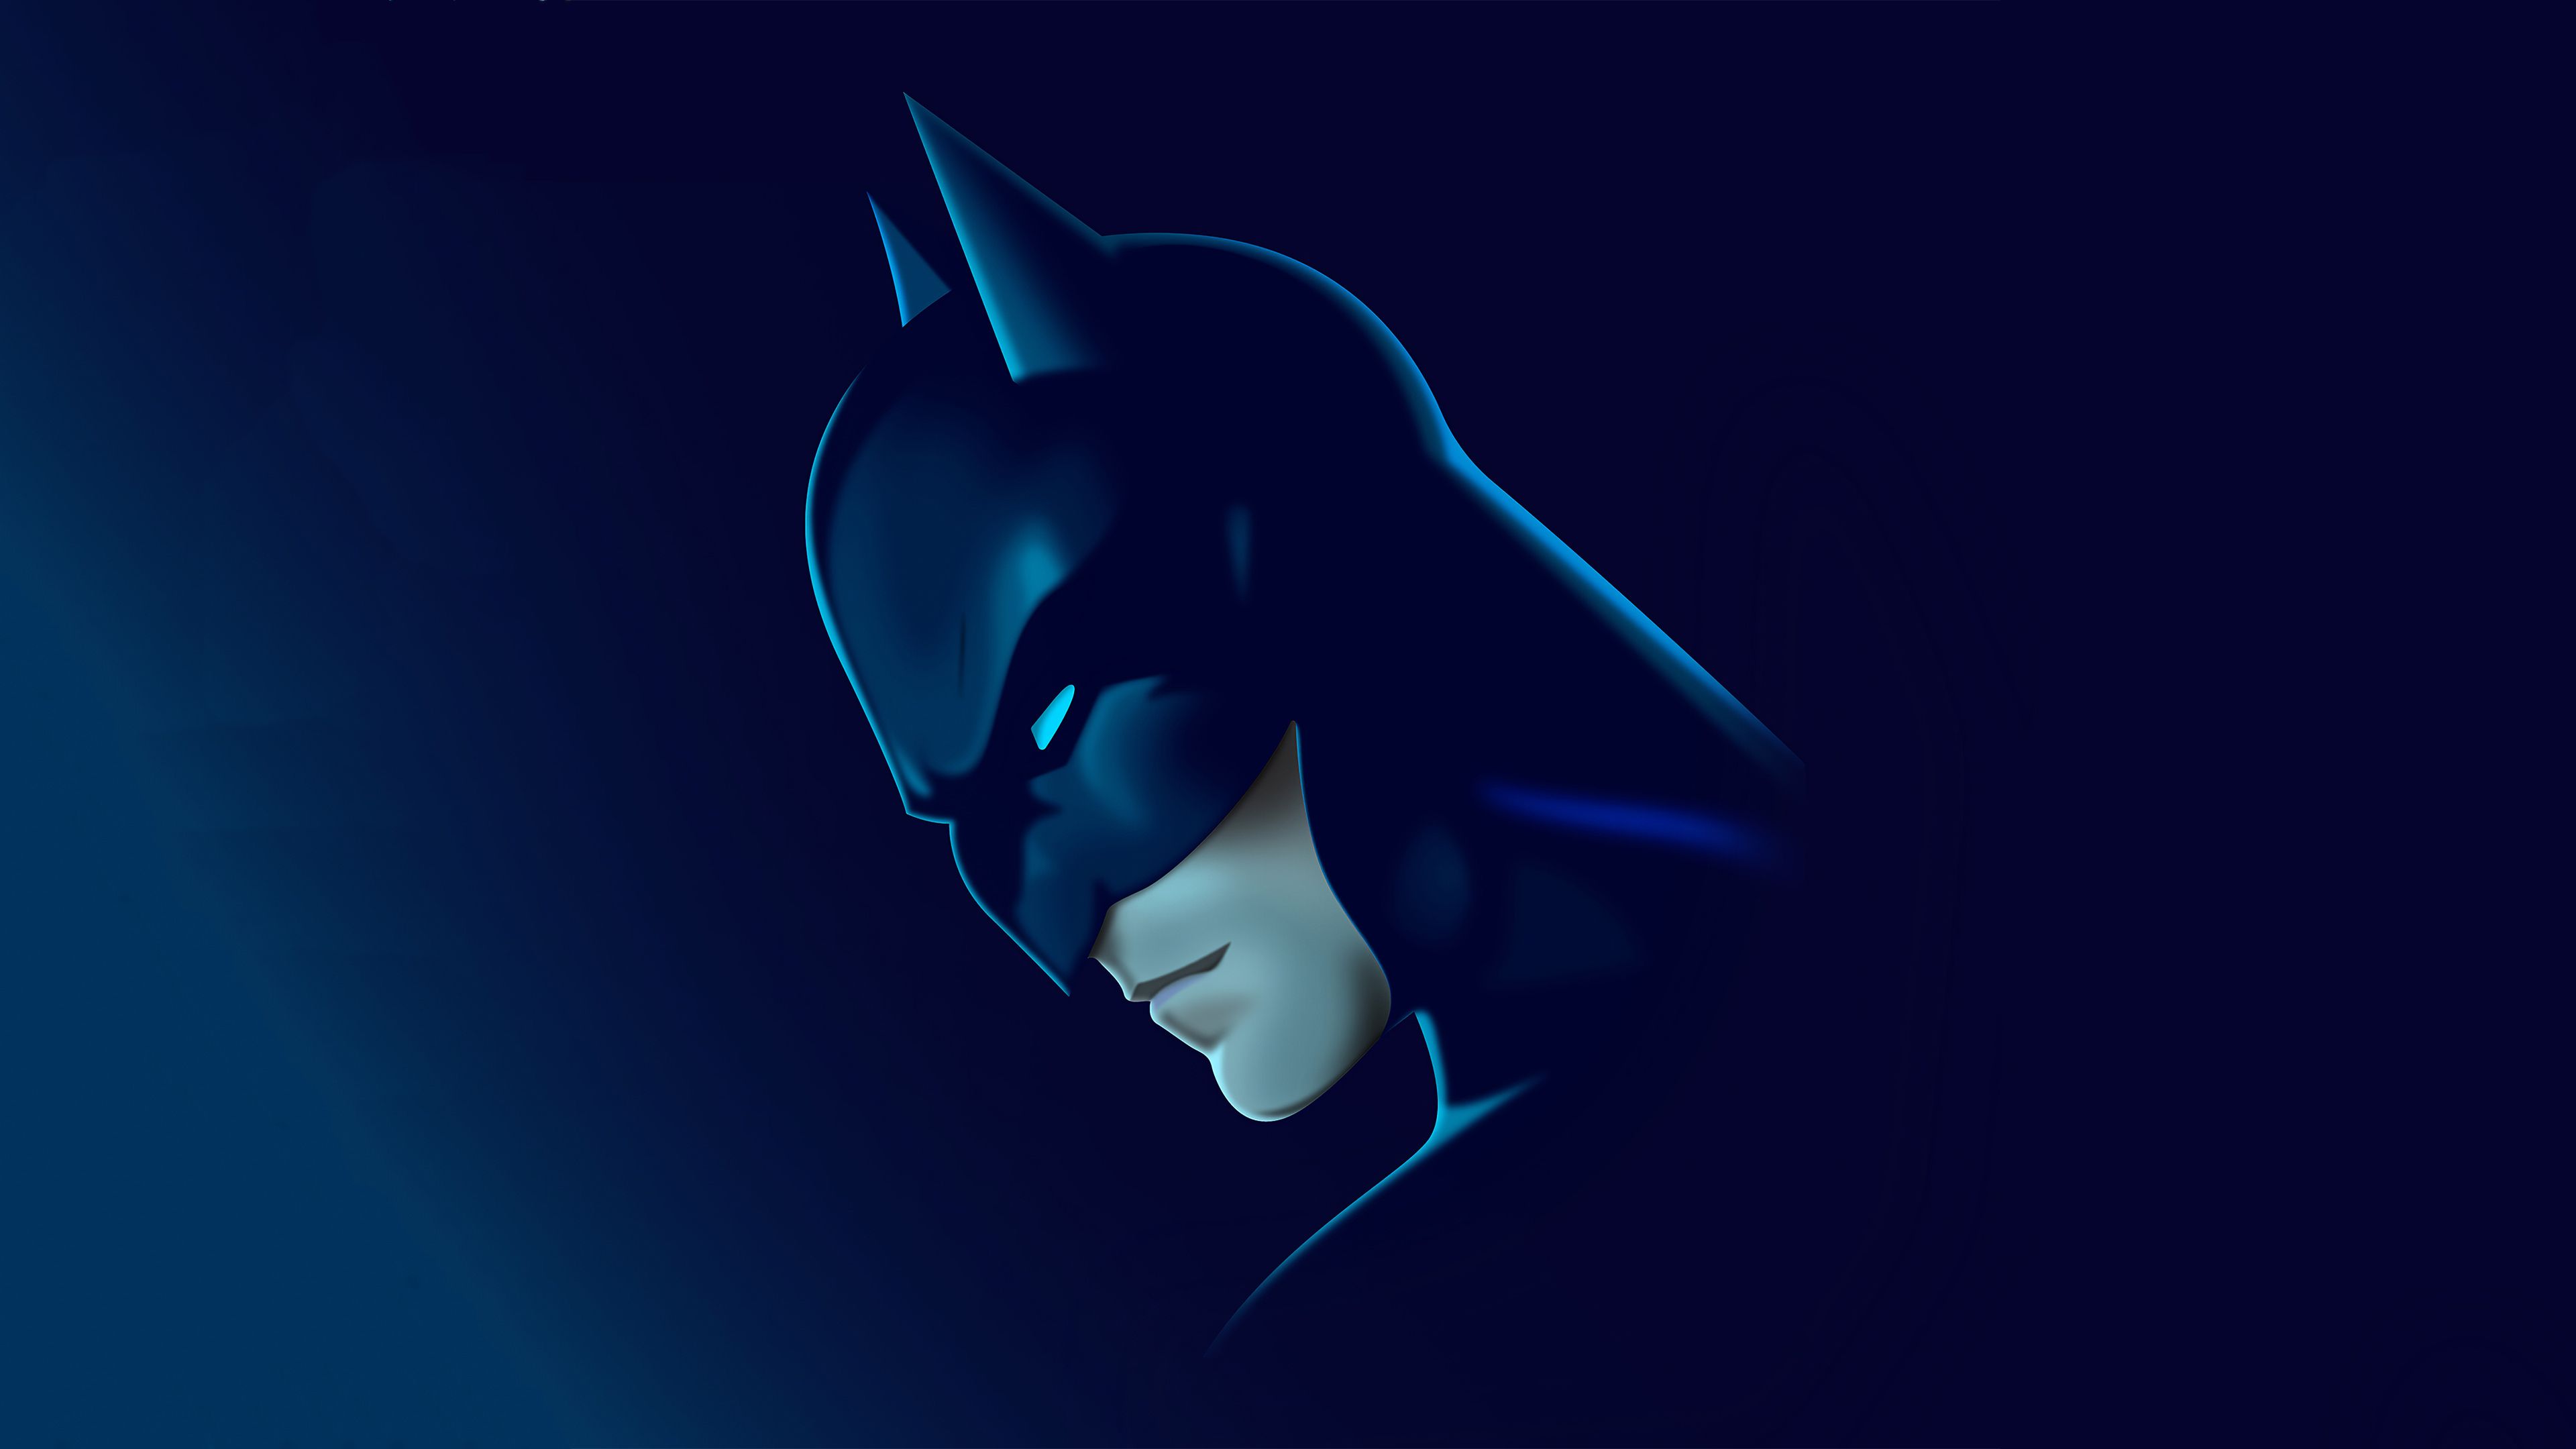 Batman 4k Minimal 2020 Samsung Galaxy S S7 , Google